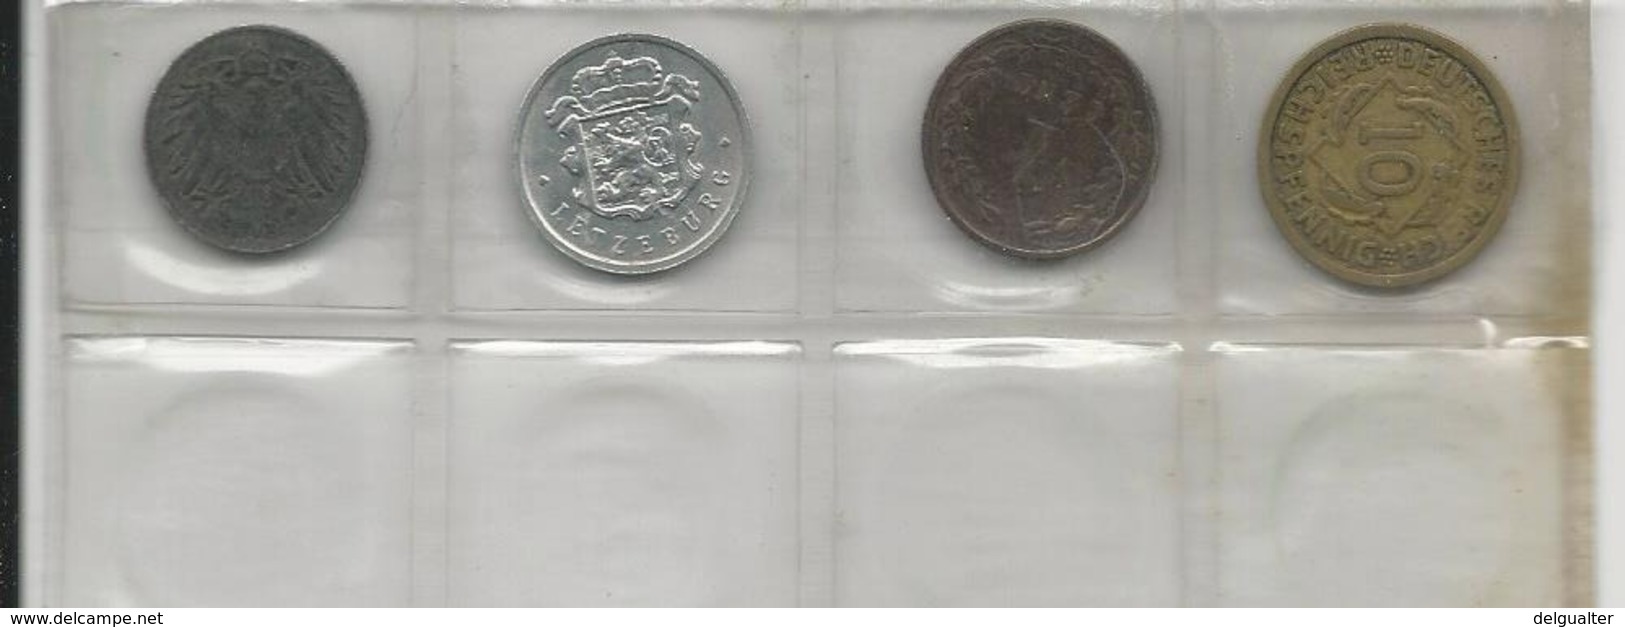 4 Coins - Kilowaar - Munten